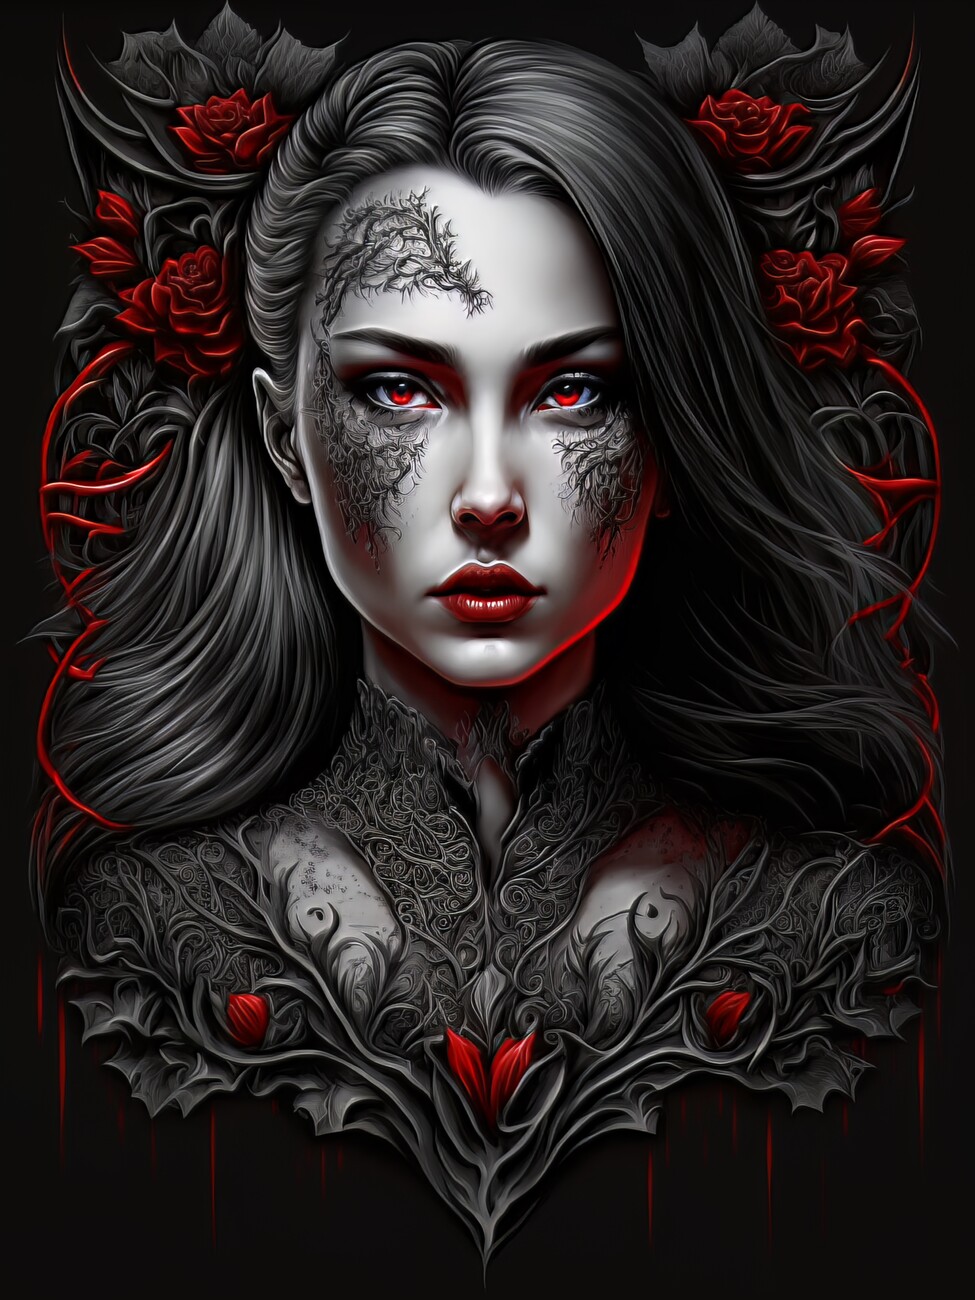 Wall Art Print, Beautiful Vampire Girl